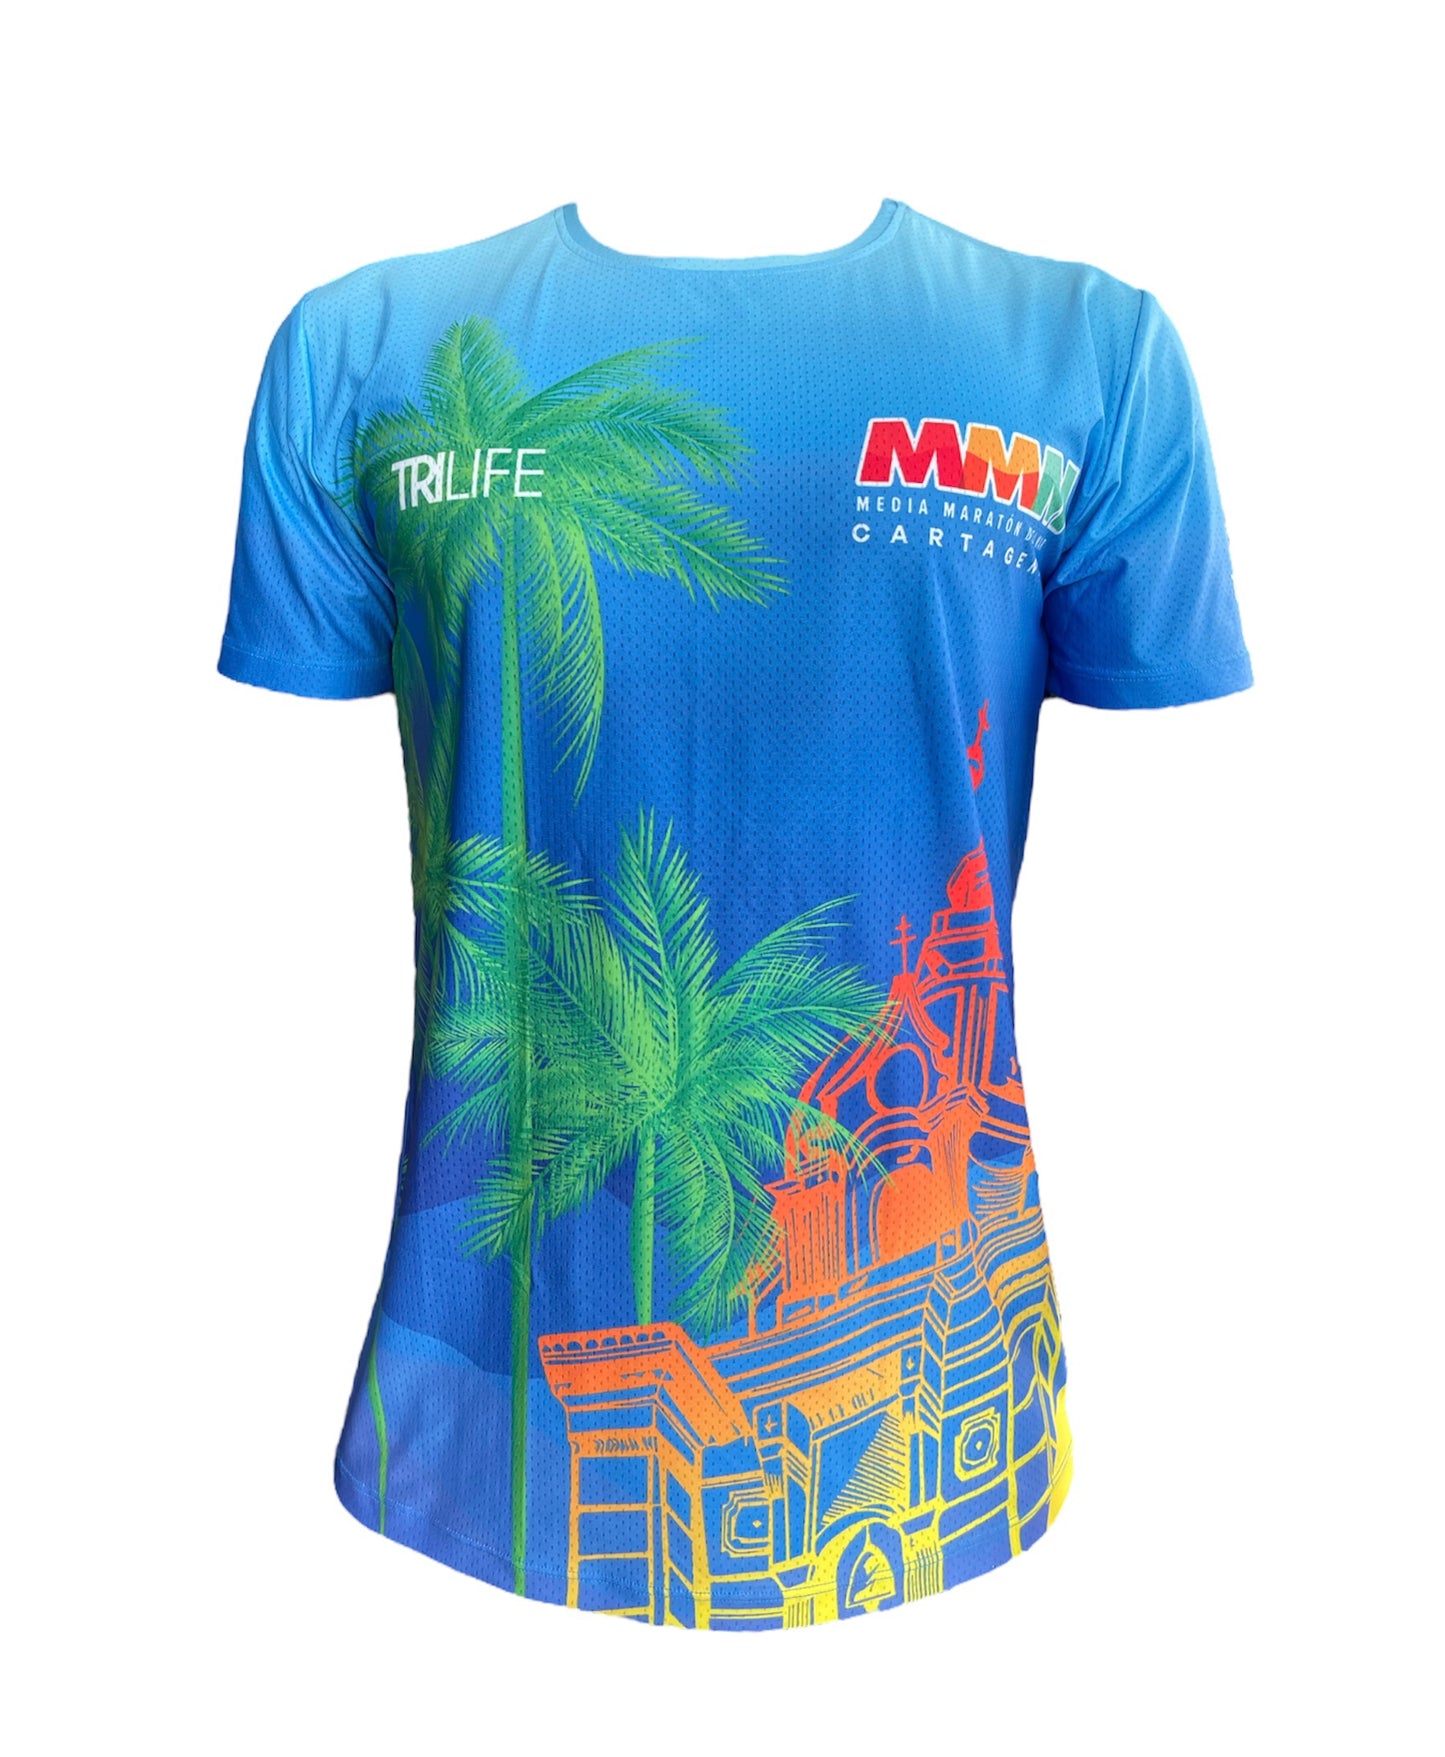 Camiseta Damas Vamo' pa la playa Media Maratón del Mar